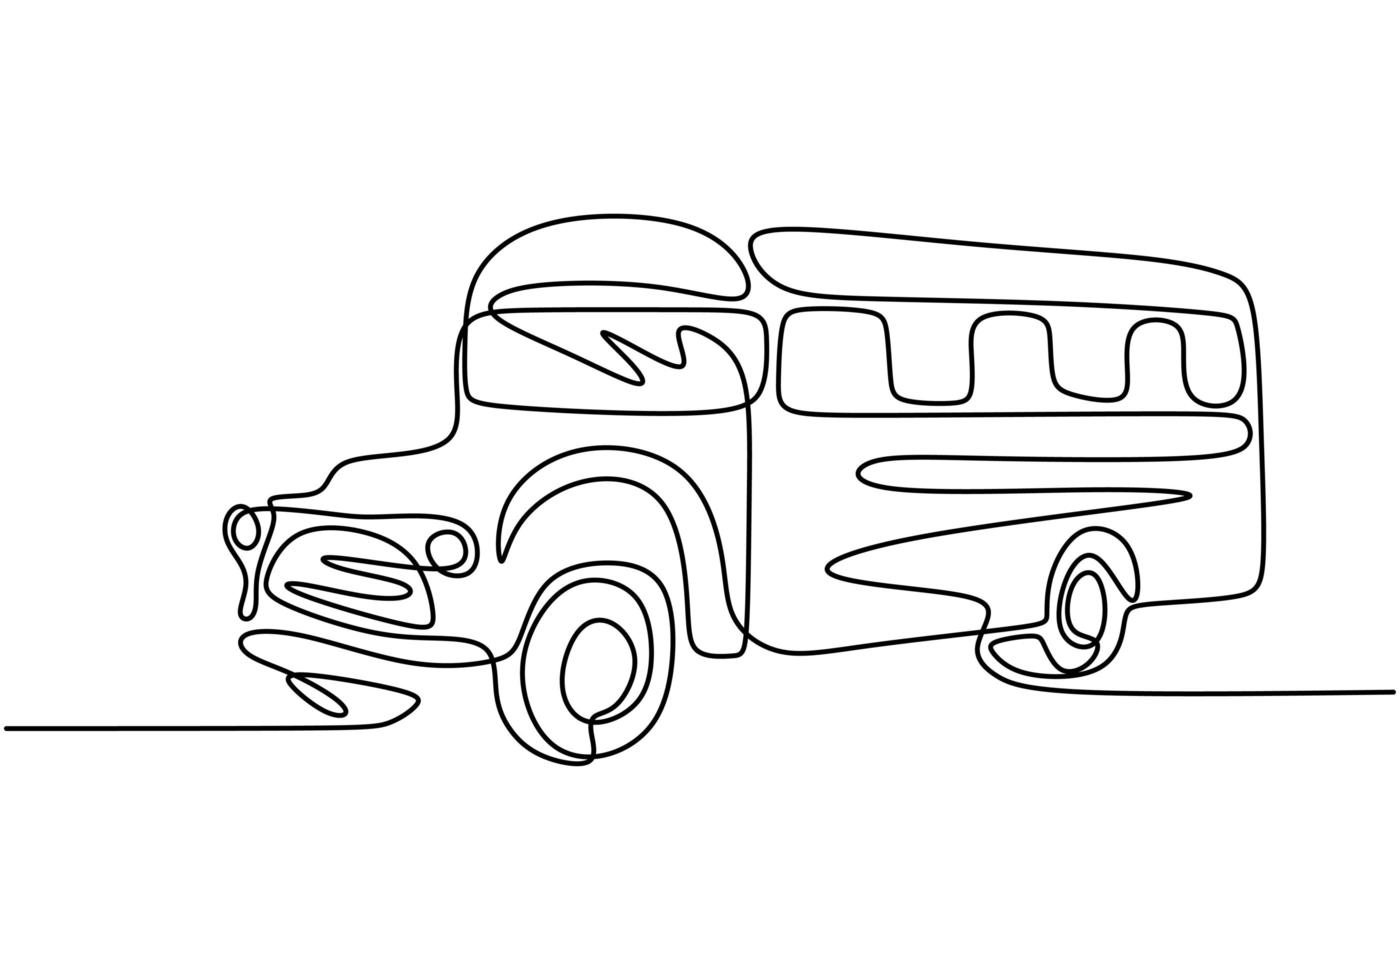 Schulbus, eine Strichzeichnung. Kontinuierliche Einzelhand des Fahrzeugs, die regelmäßig zum Transport von Schülern verwendet wird. vektor